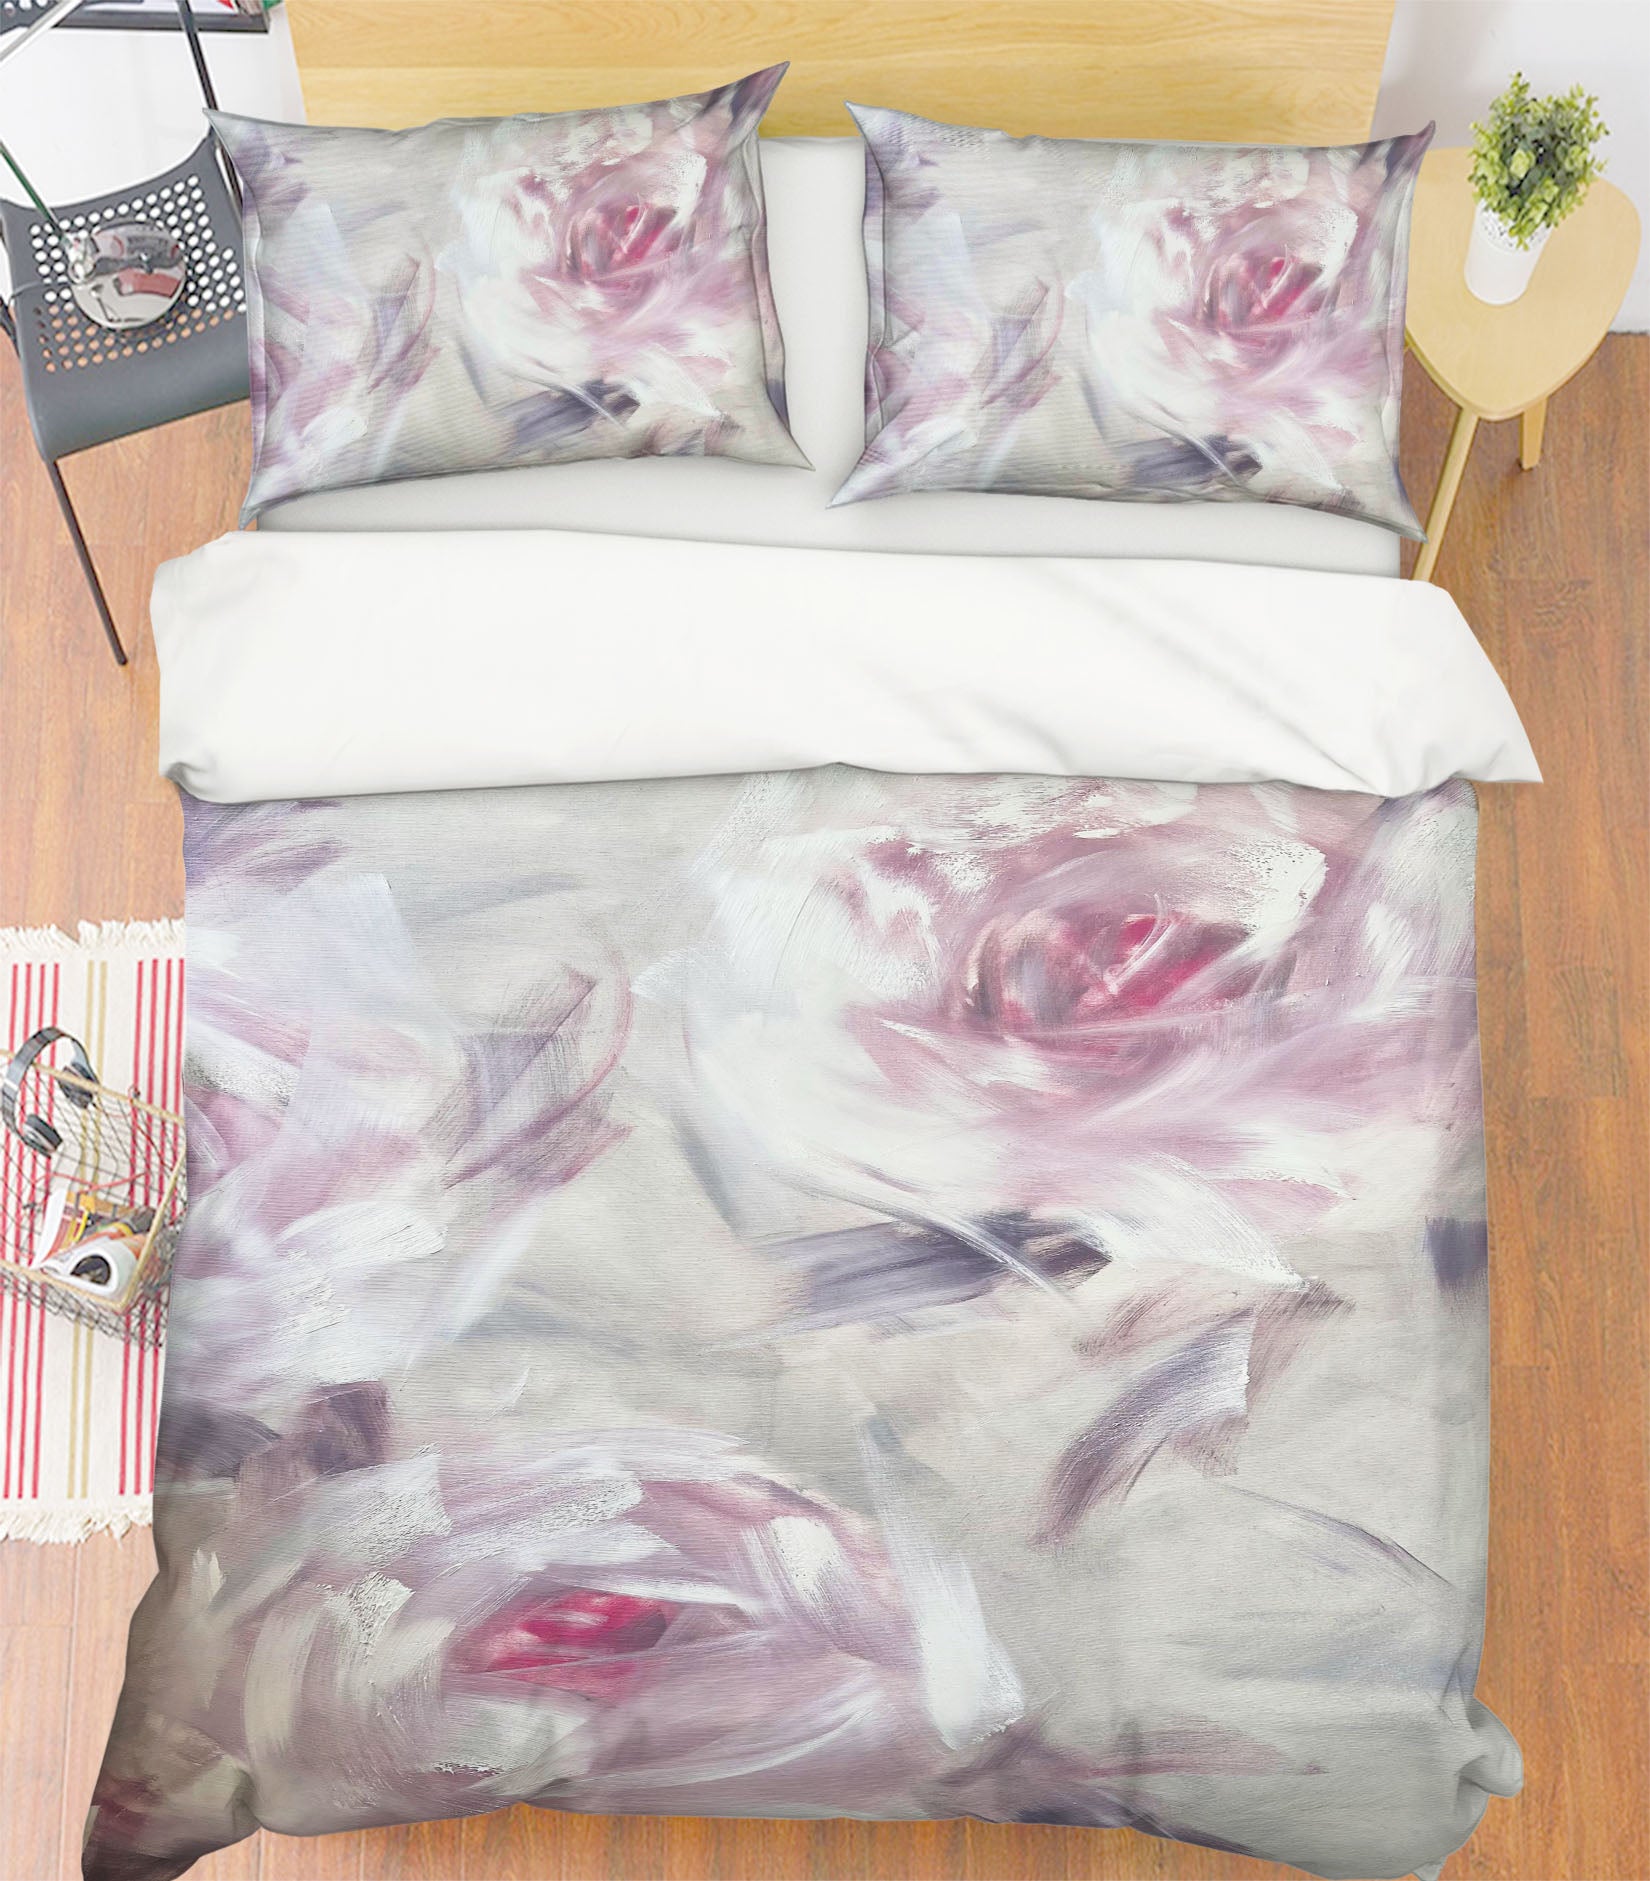 3D Gentle Pink Flower 3143 Skromova Marina Bedding Bed Pillowcases Quilt Cover Duvet Cover